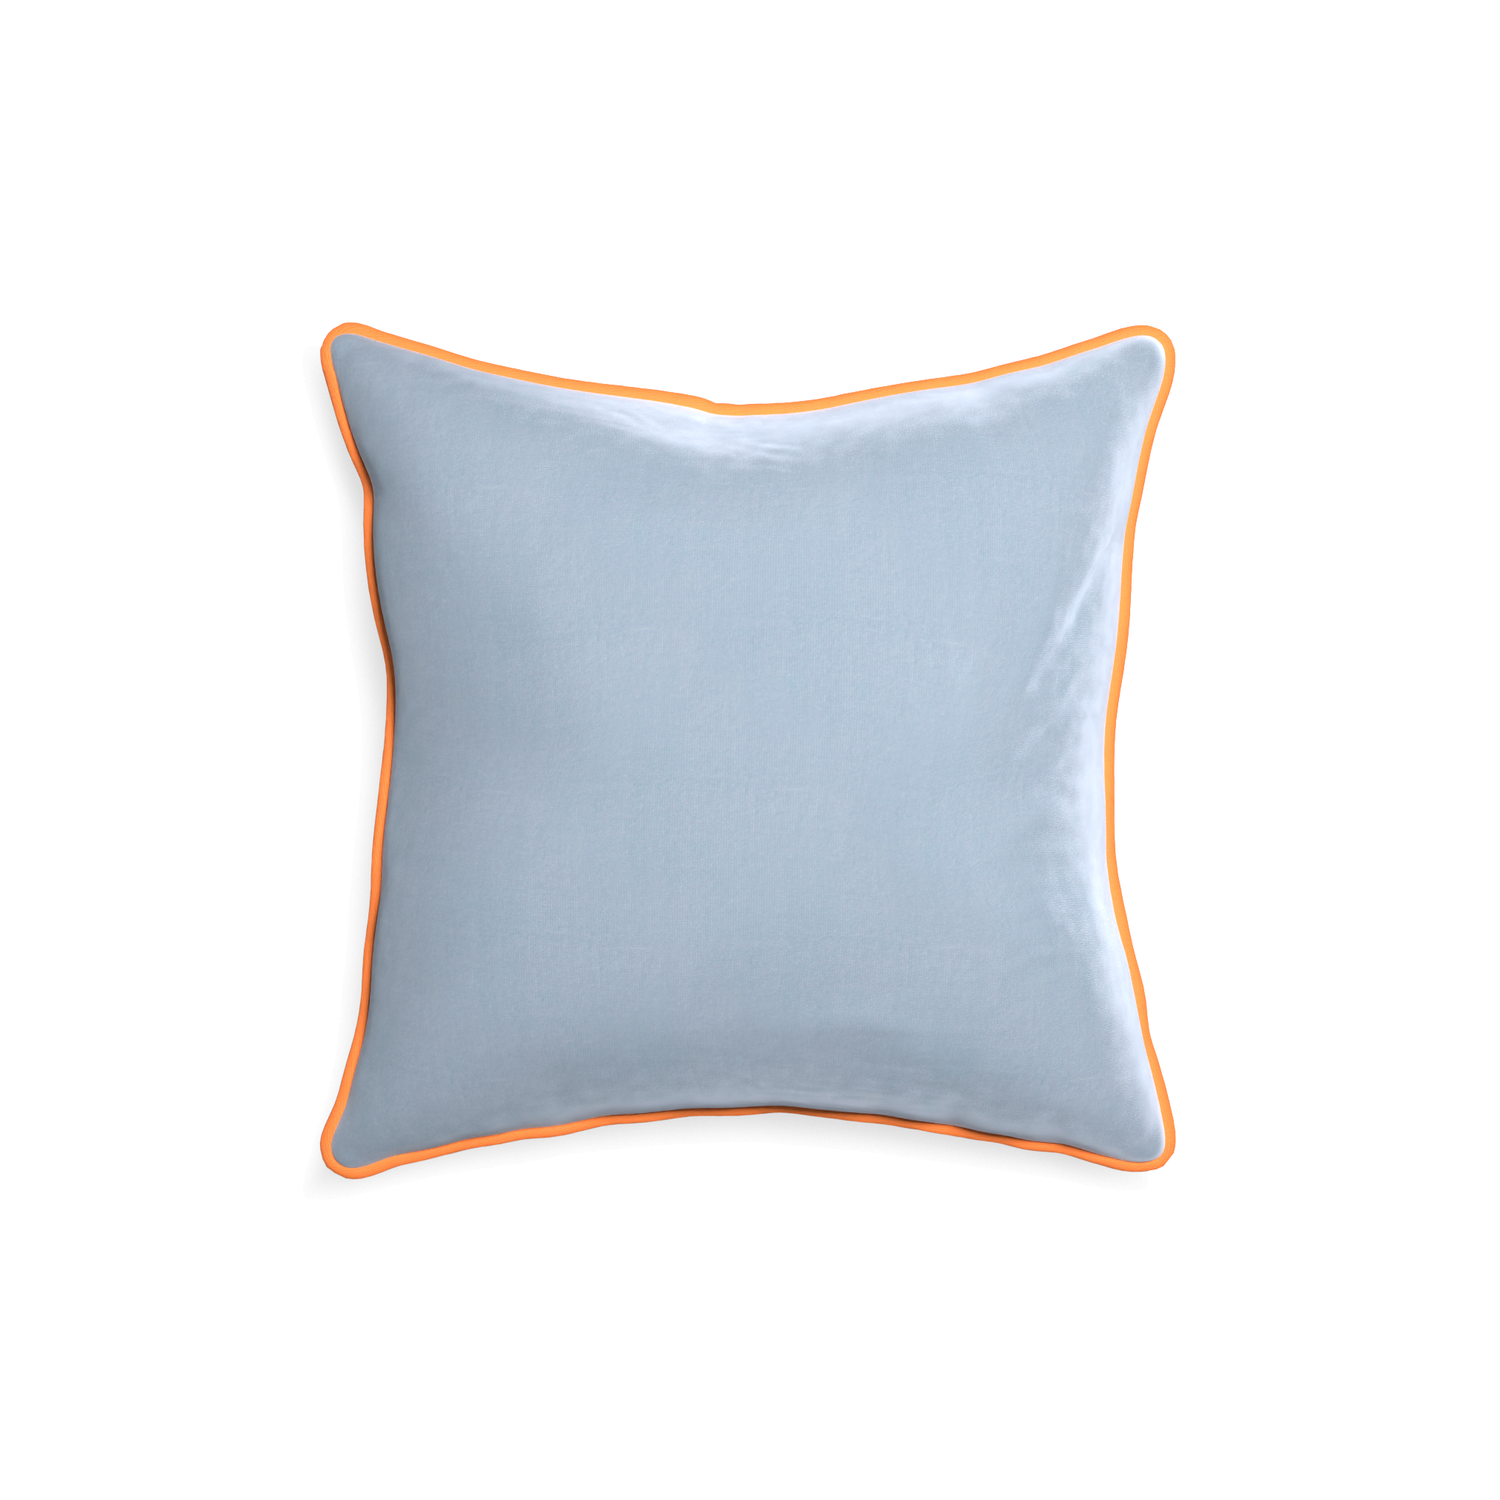 square light blue velvet pillow with orange piping